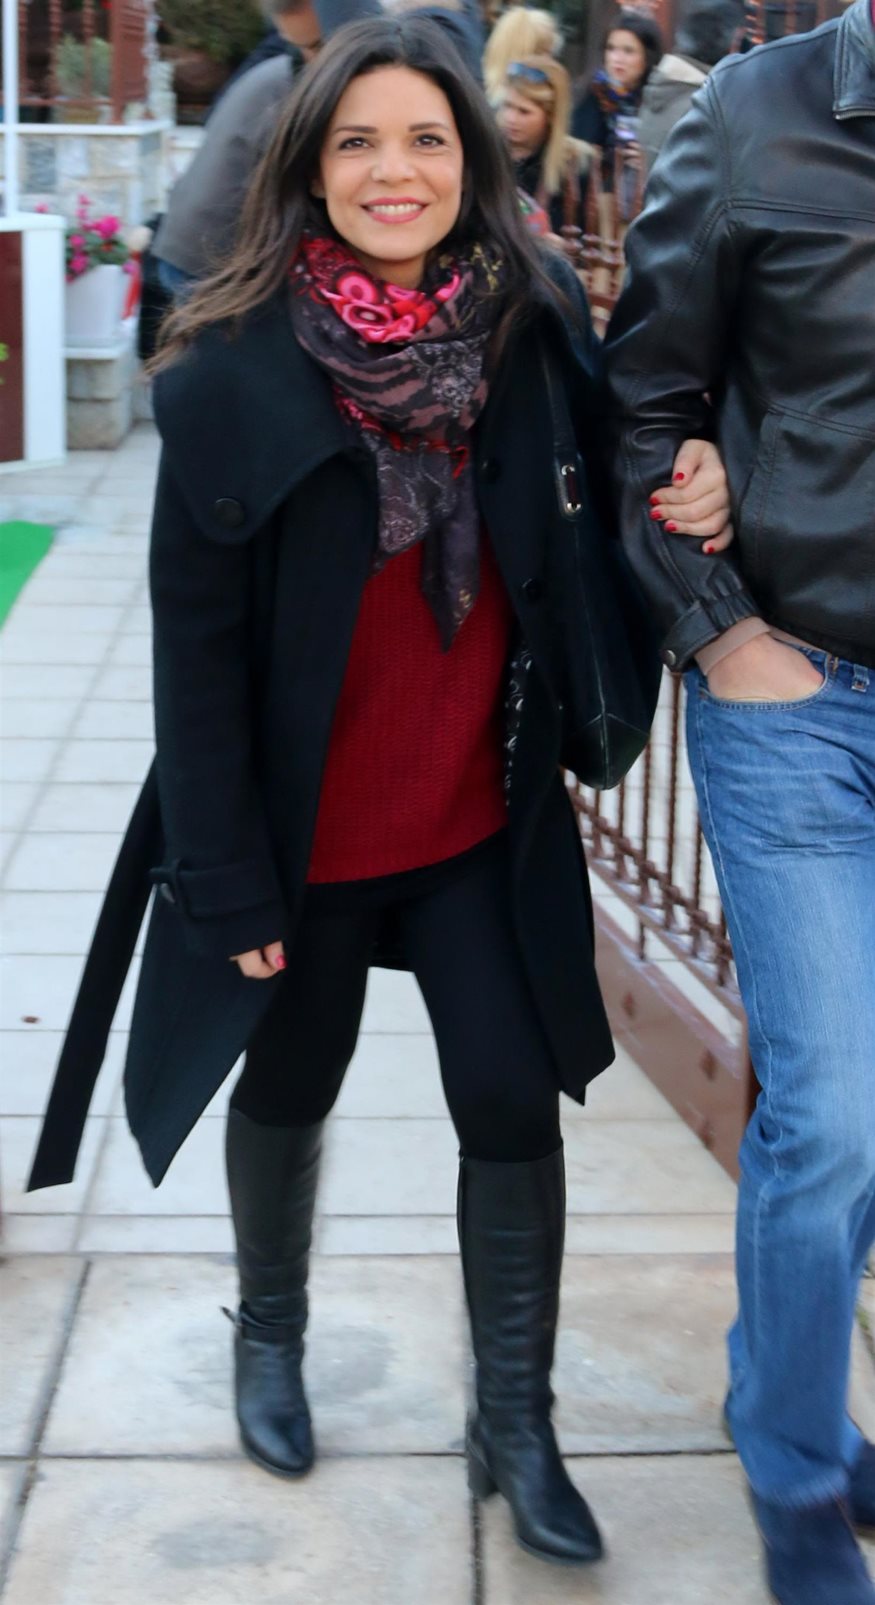 Μαρίνα Ασλάνογλου: Με τον γοητευτικό σύζυγό της σε σπάνια δημόσια εμφάνιση